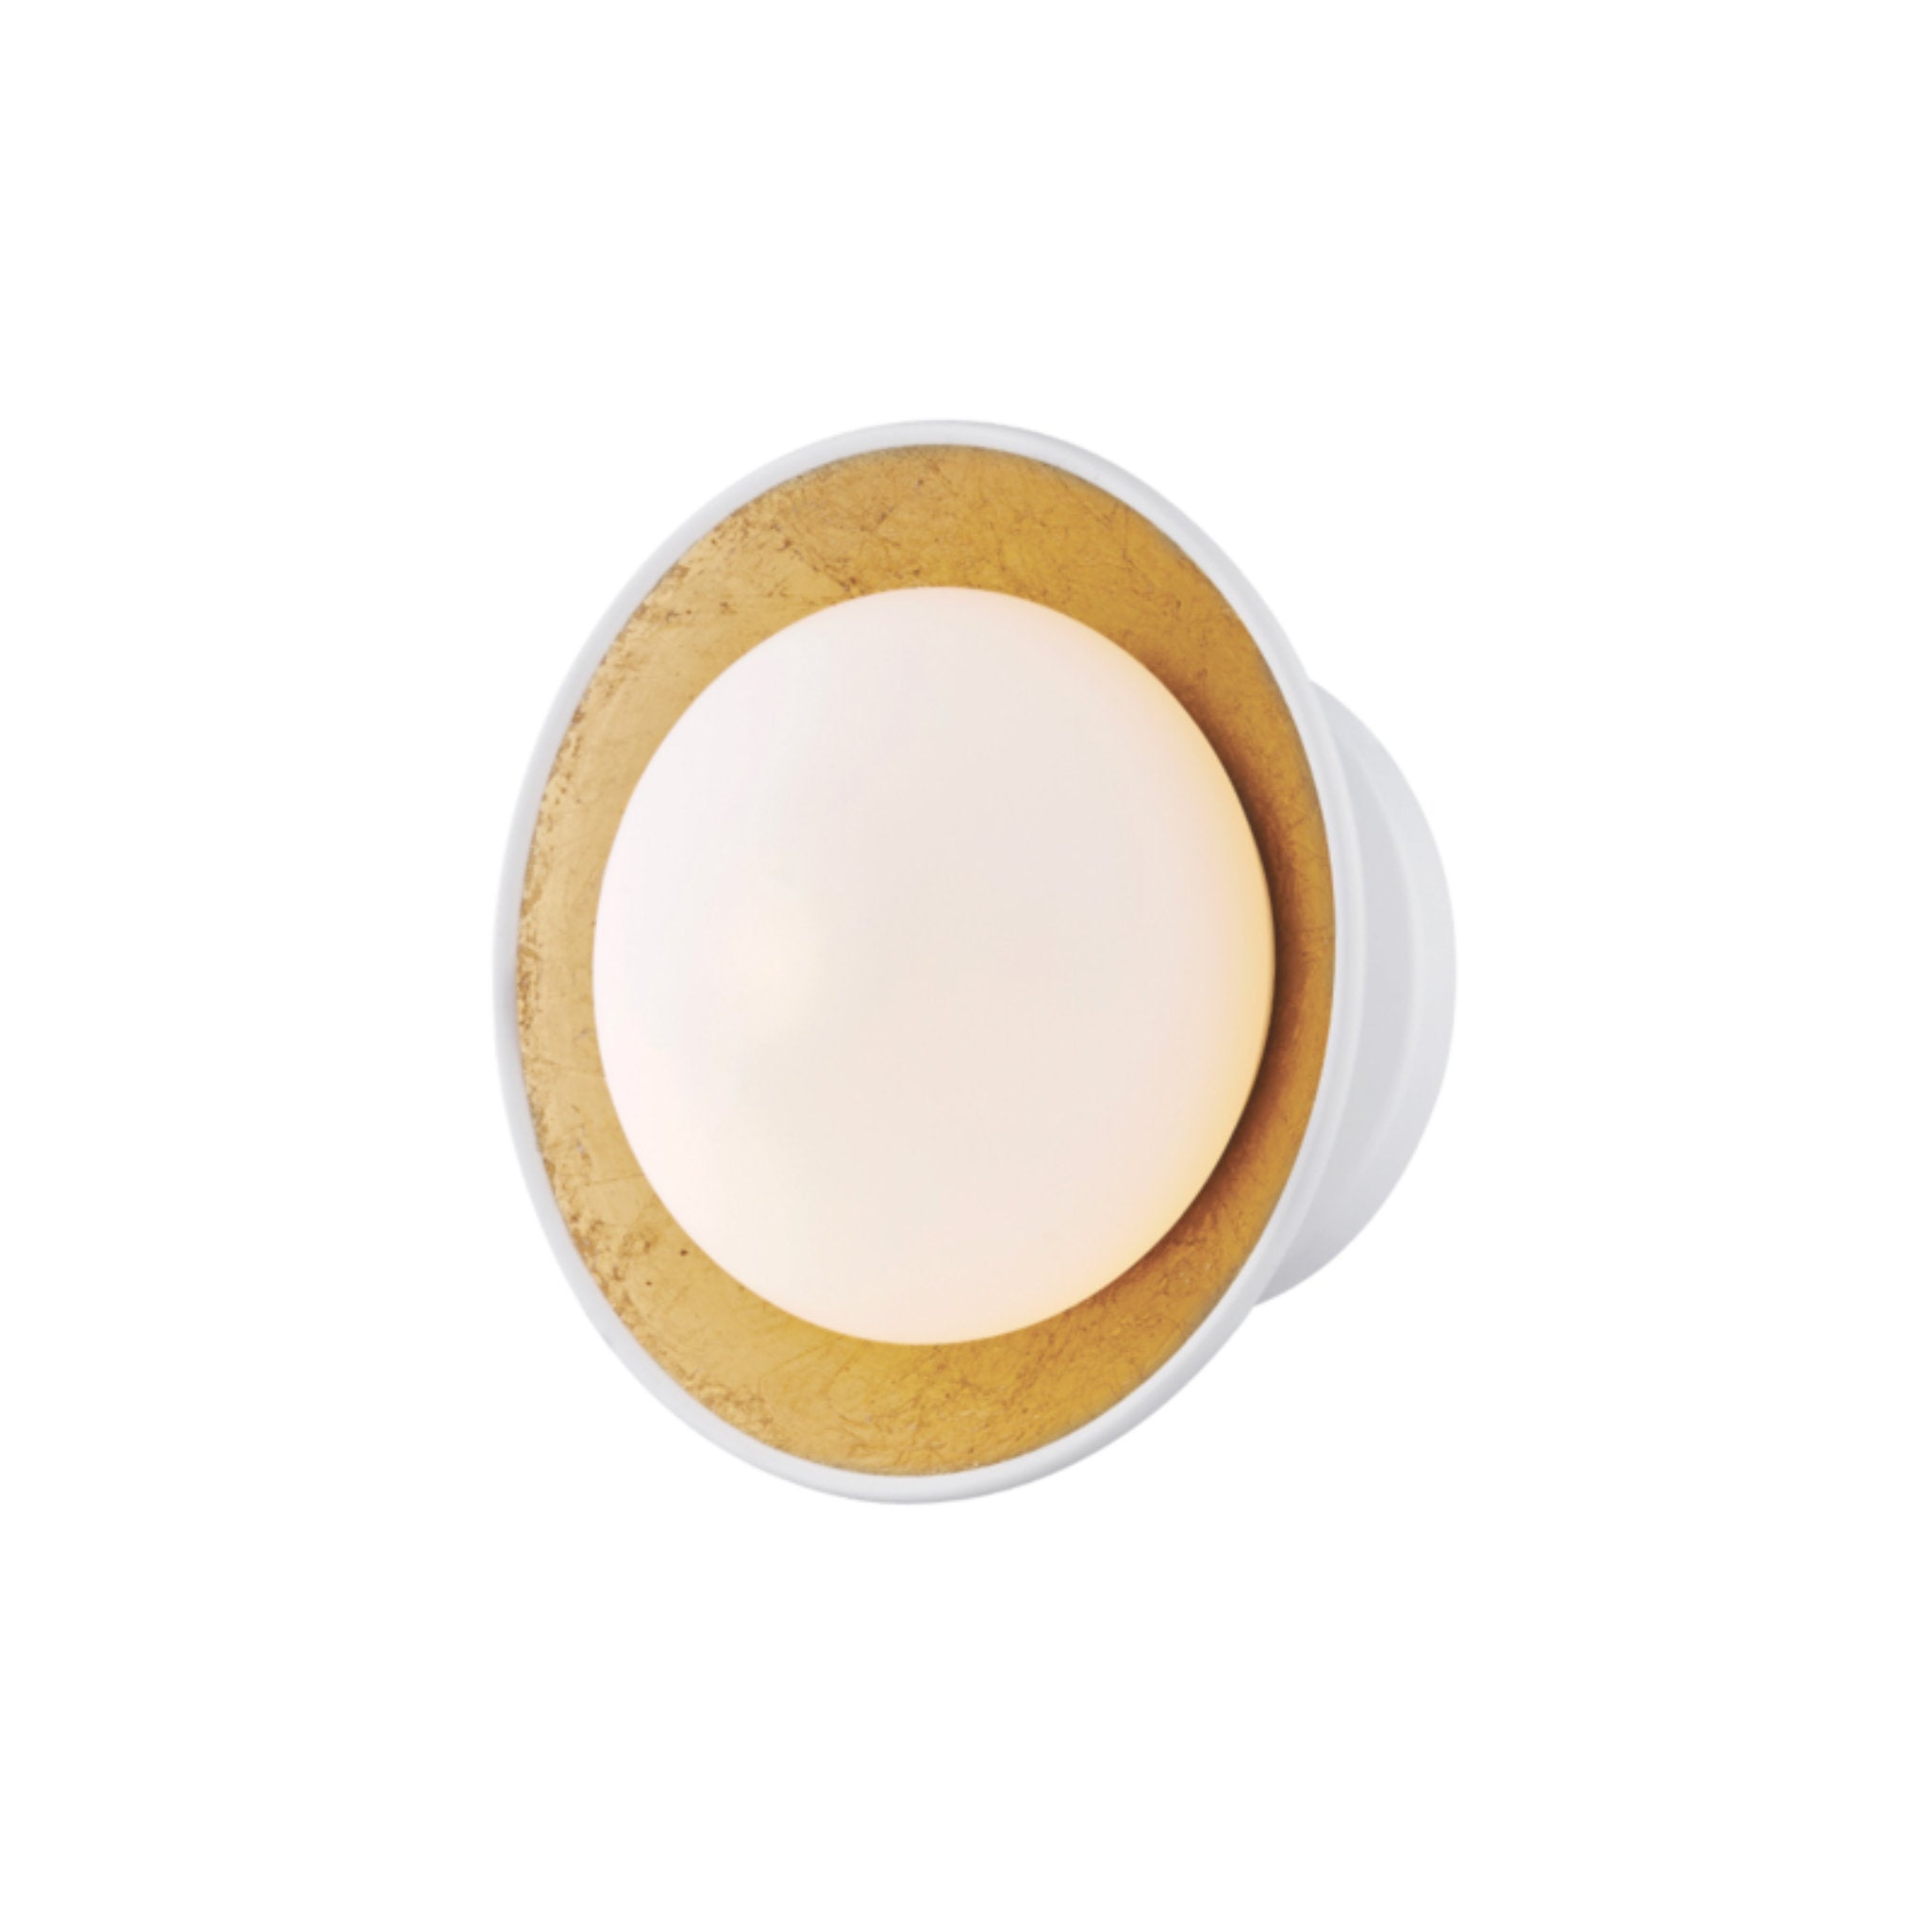 Cadence 1-Light Semi Flush in White Lustro/Gold Leaf Combo